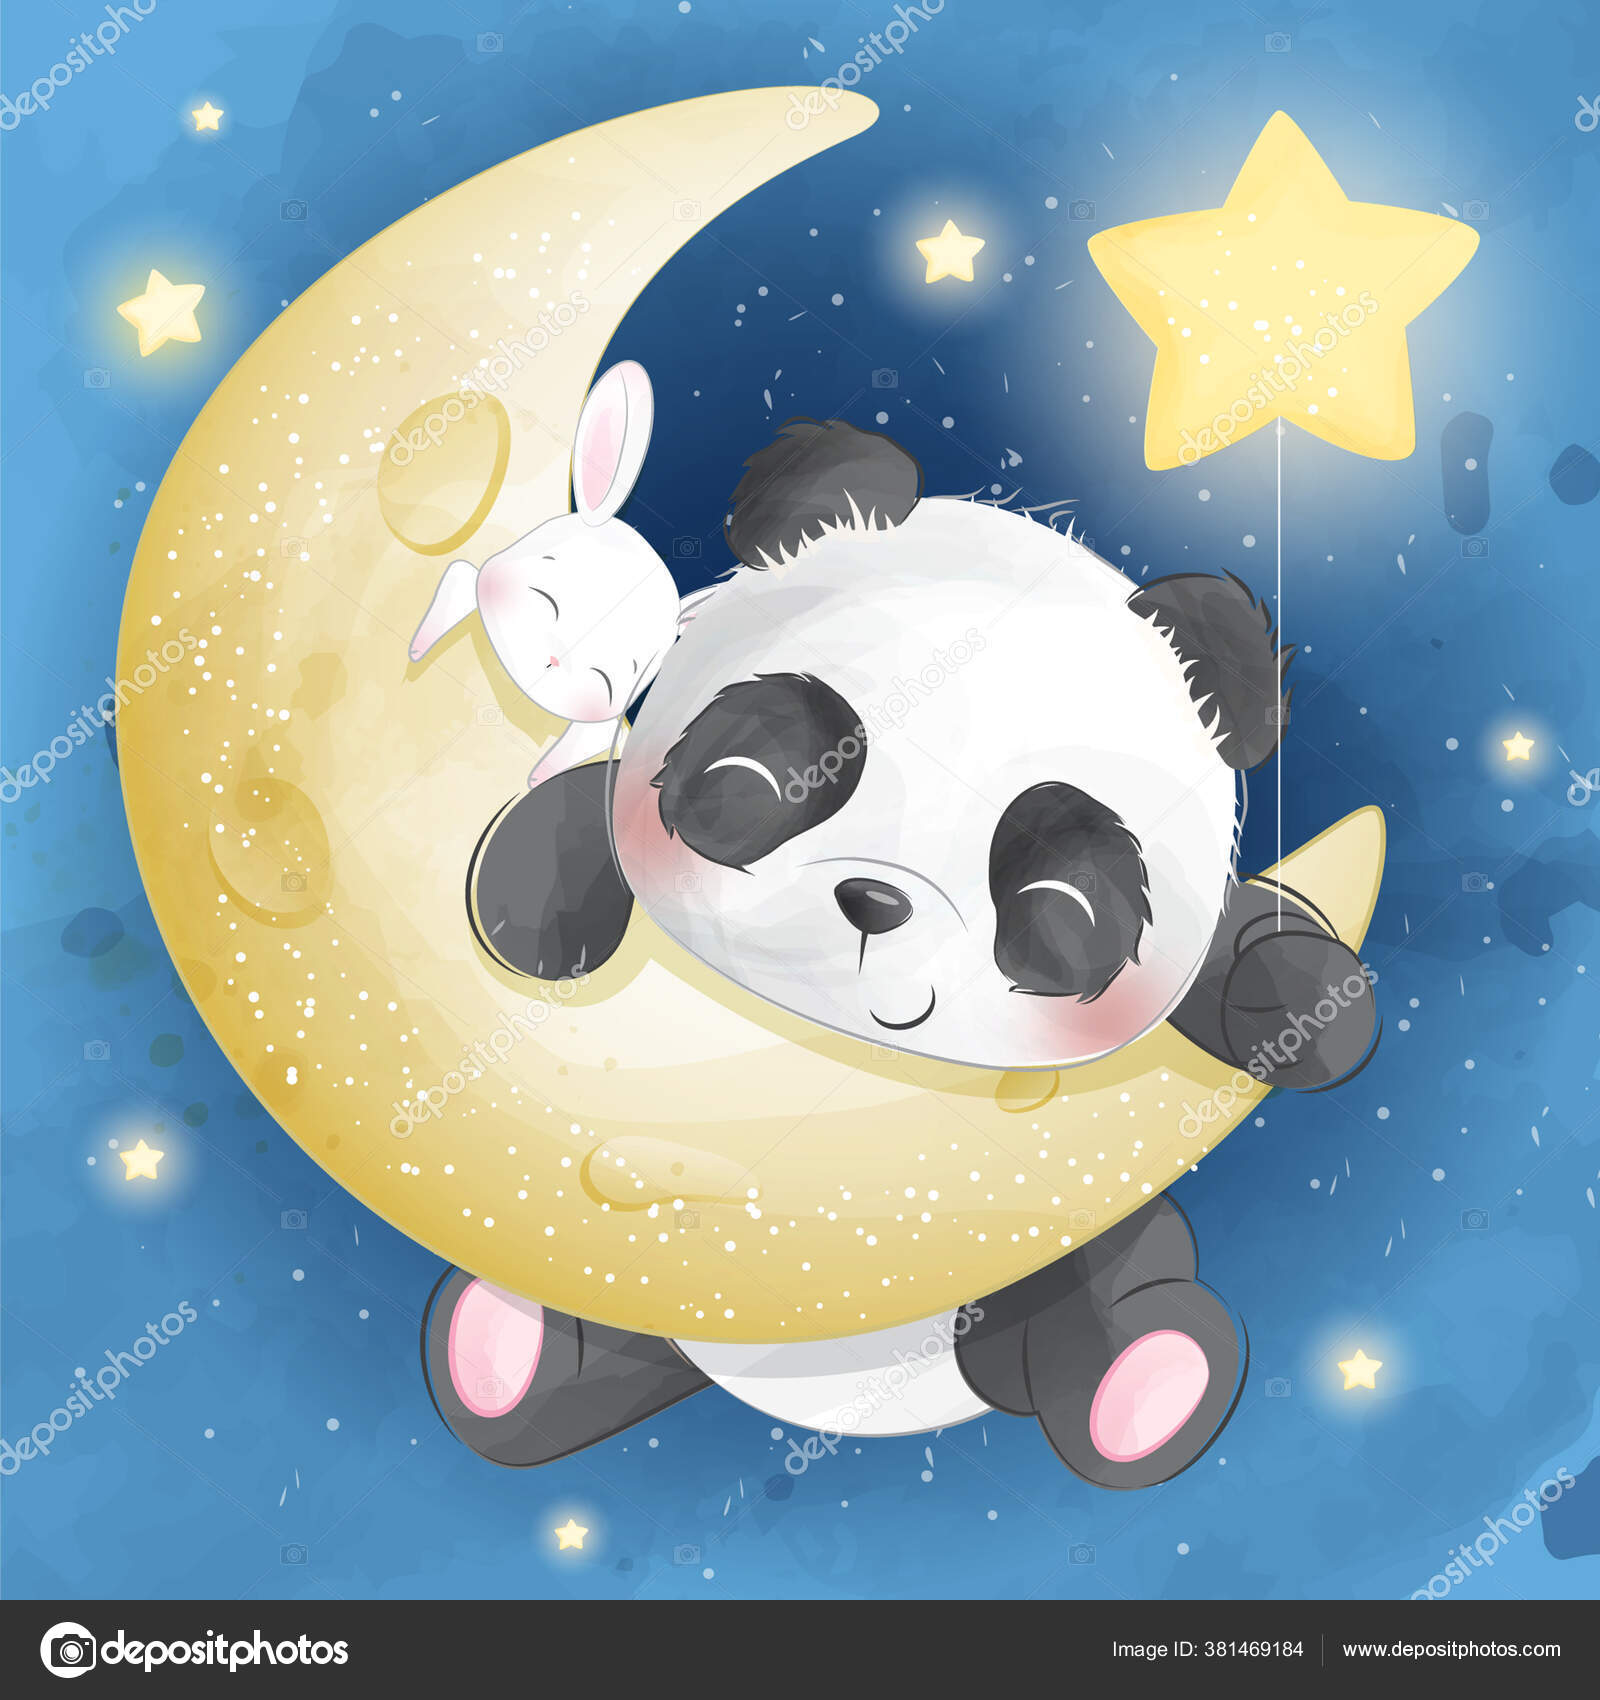 menino bonito vestindo fantasia de panda. ilustração de desenho